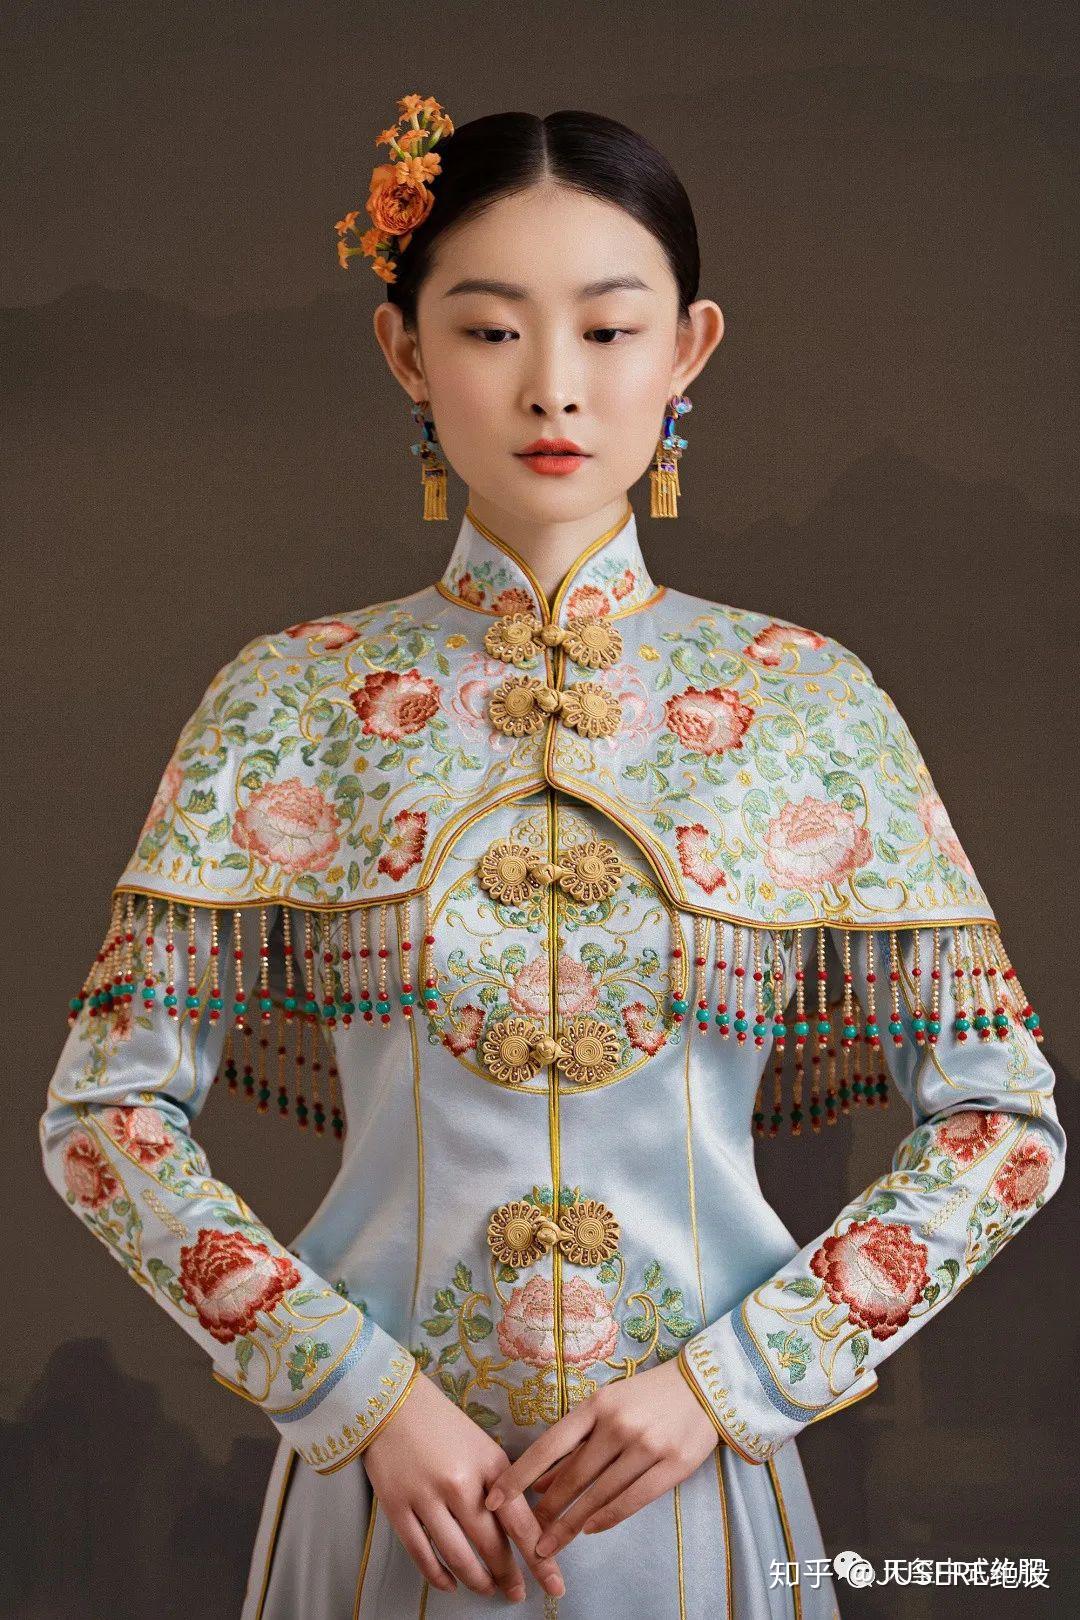 【名师在线】中国传统文化之旅系列课程第十五讲——《云肩的秘密》_图案